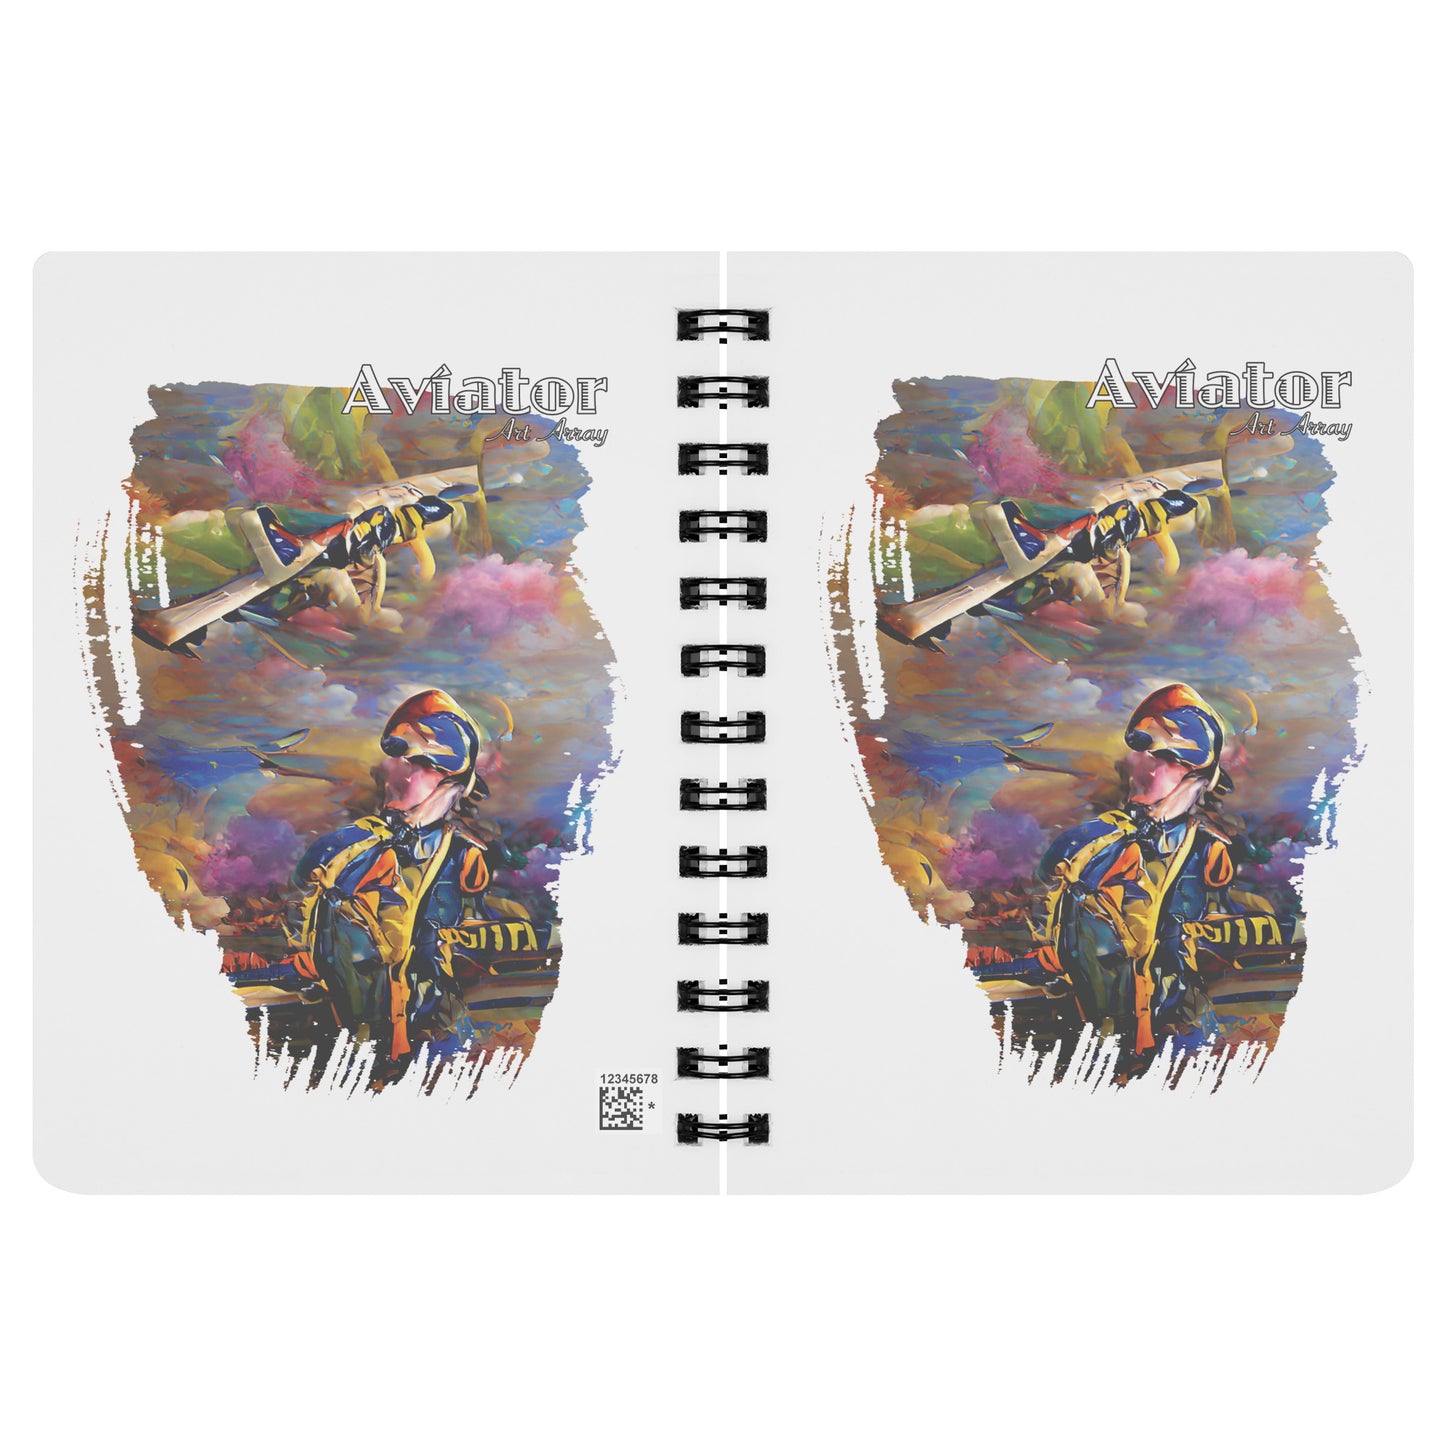 Aviator Art Array #3 spiral notebook